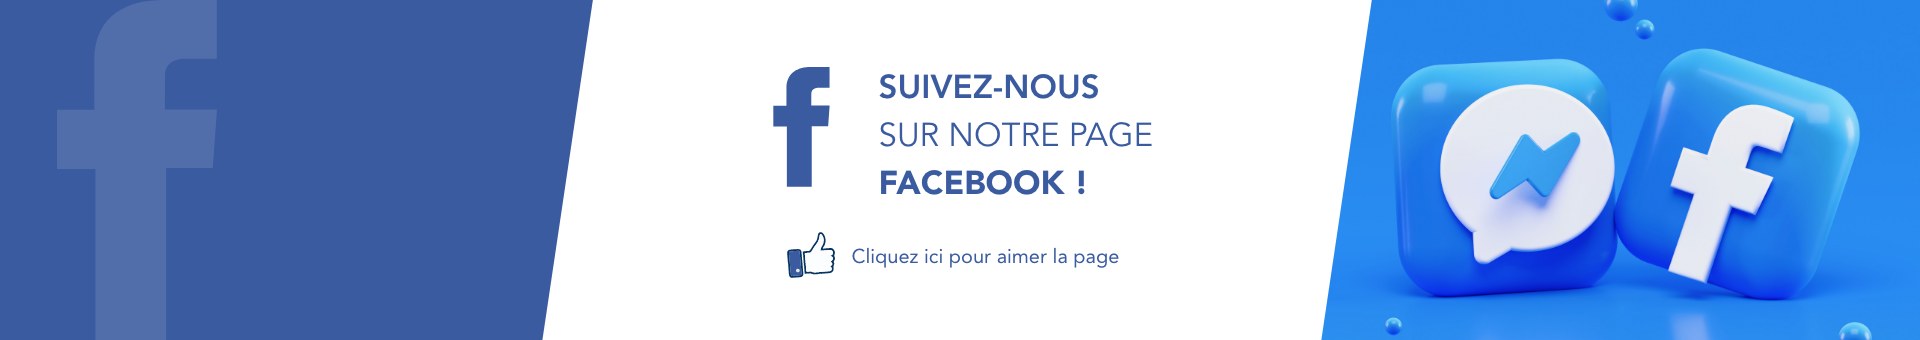 Logo bleu du réseau social Facebook